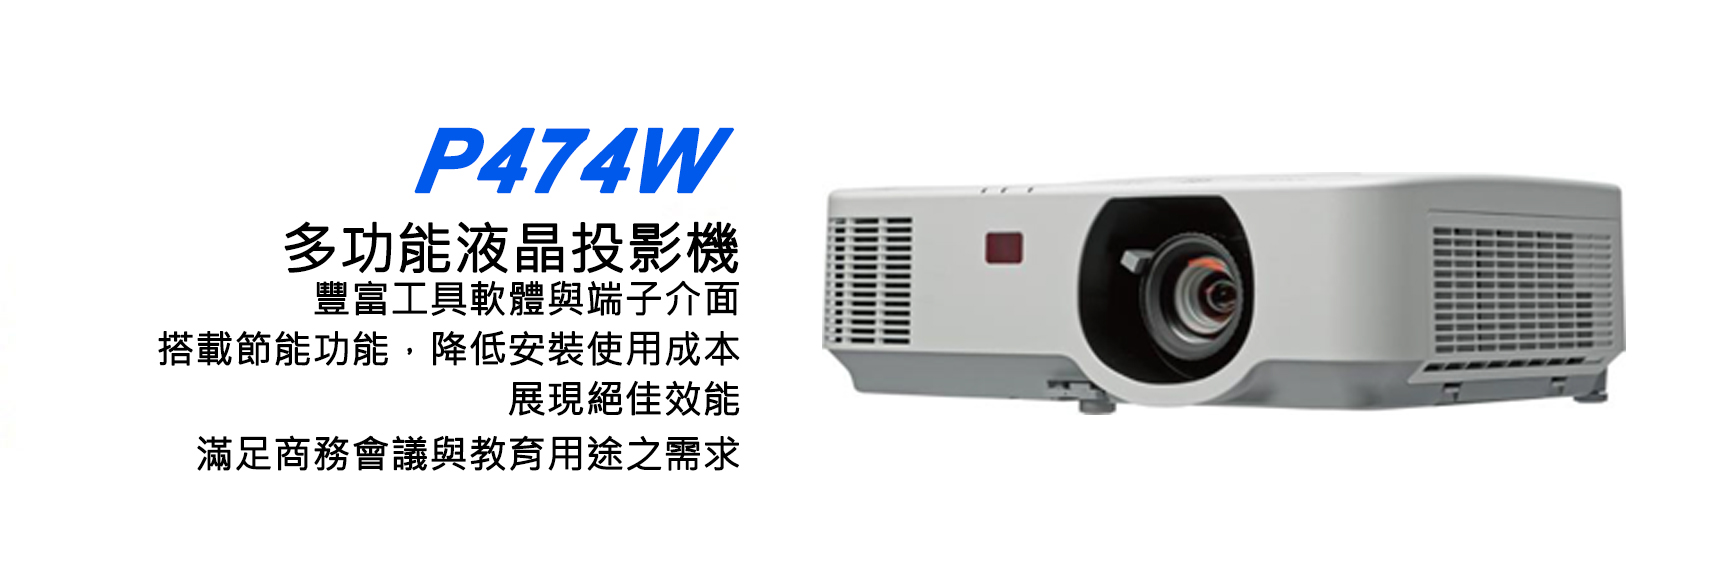 NEC P474W 多功能液晶投影機 1